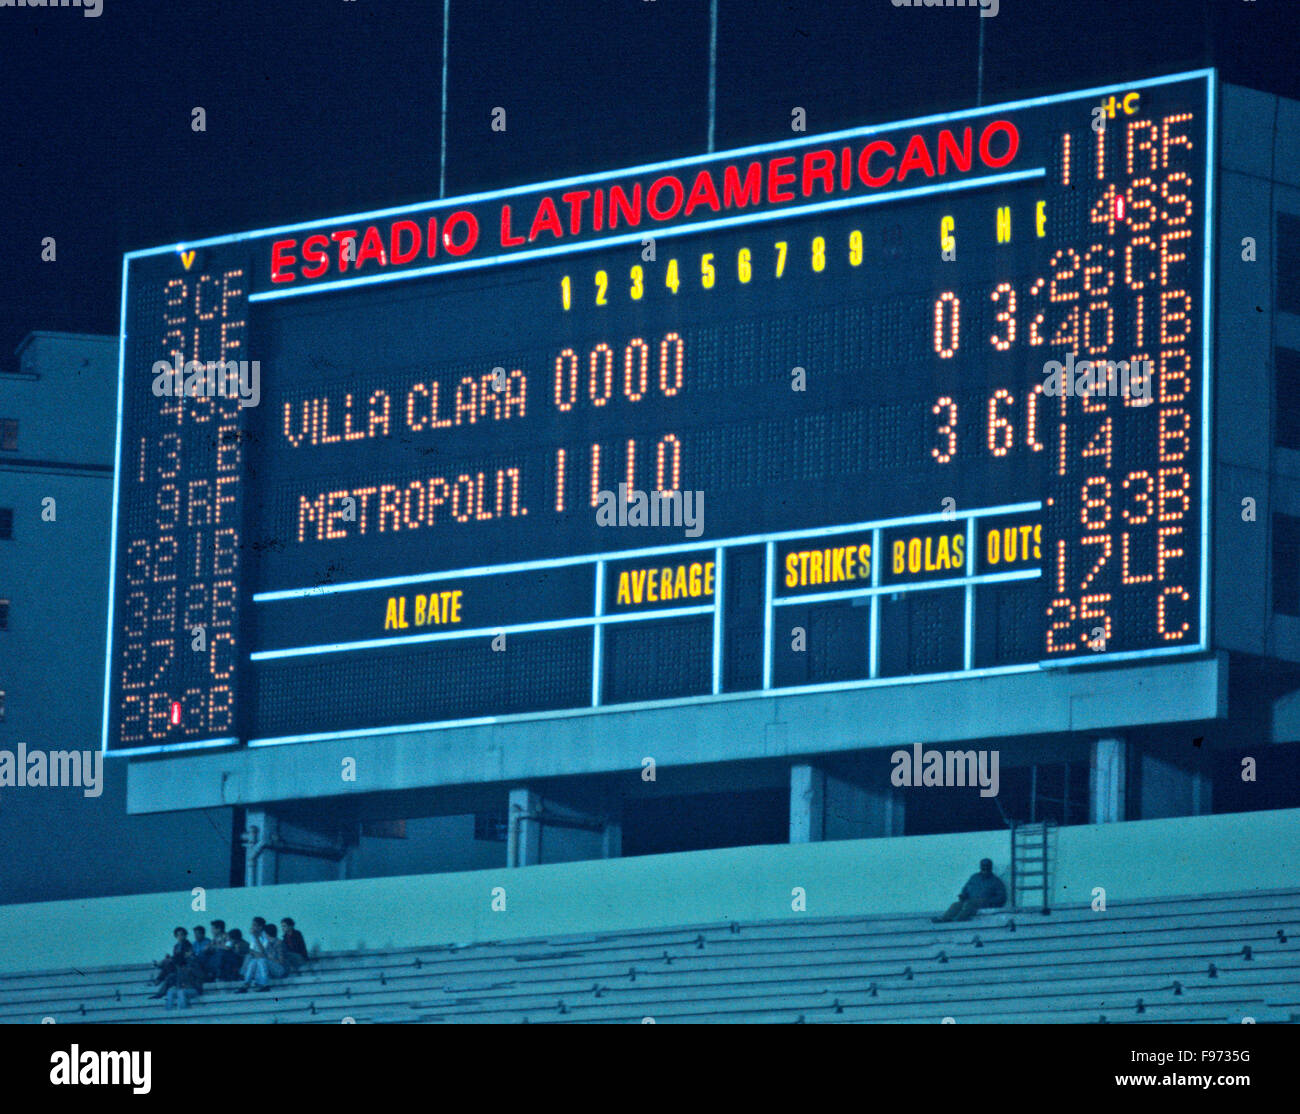 L'Avana Beisbol scoreboard Foto Stock